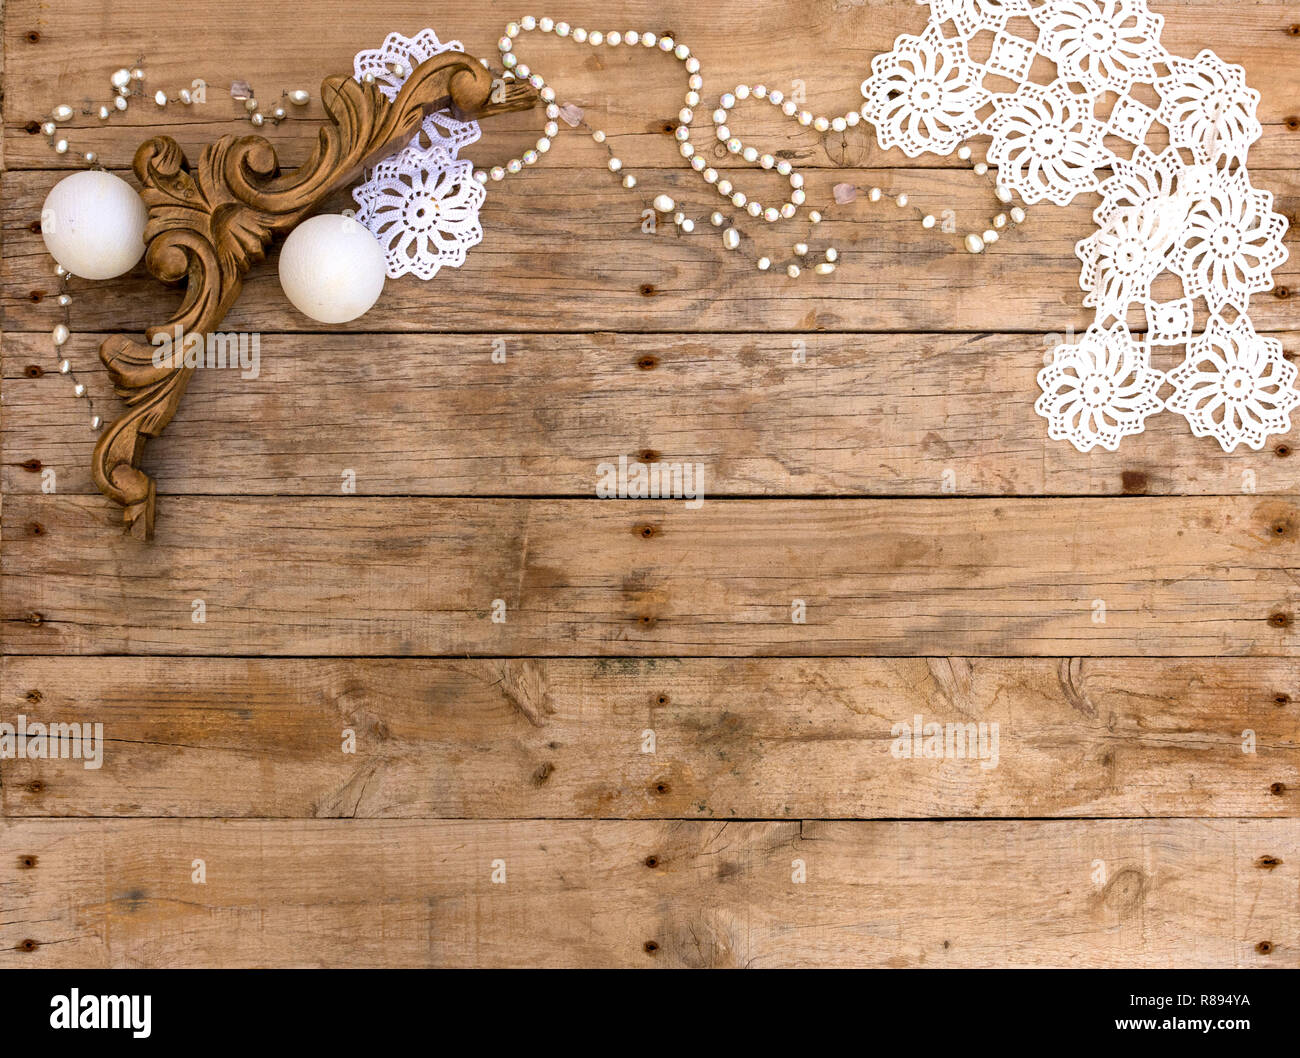 Weihnachten Postkarte Rahmen auf Holz- Hintergrund. Für die Grußkarte. Xmas Wallpaper, Vintage Holz- und weiße Objekte. Stockfoto